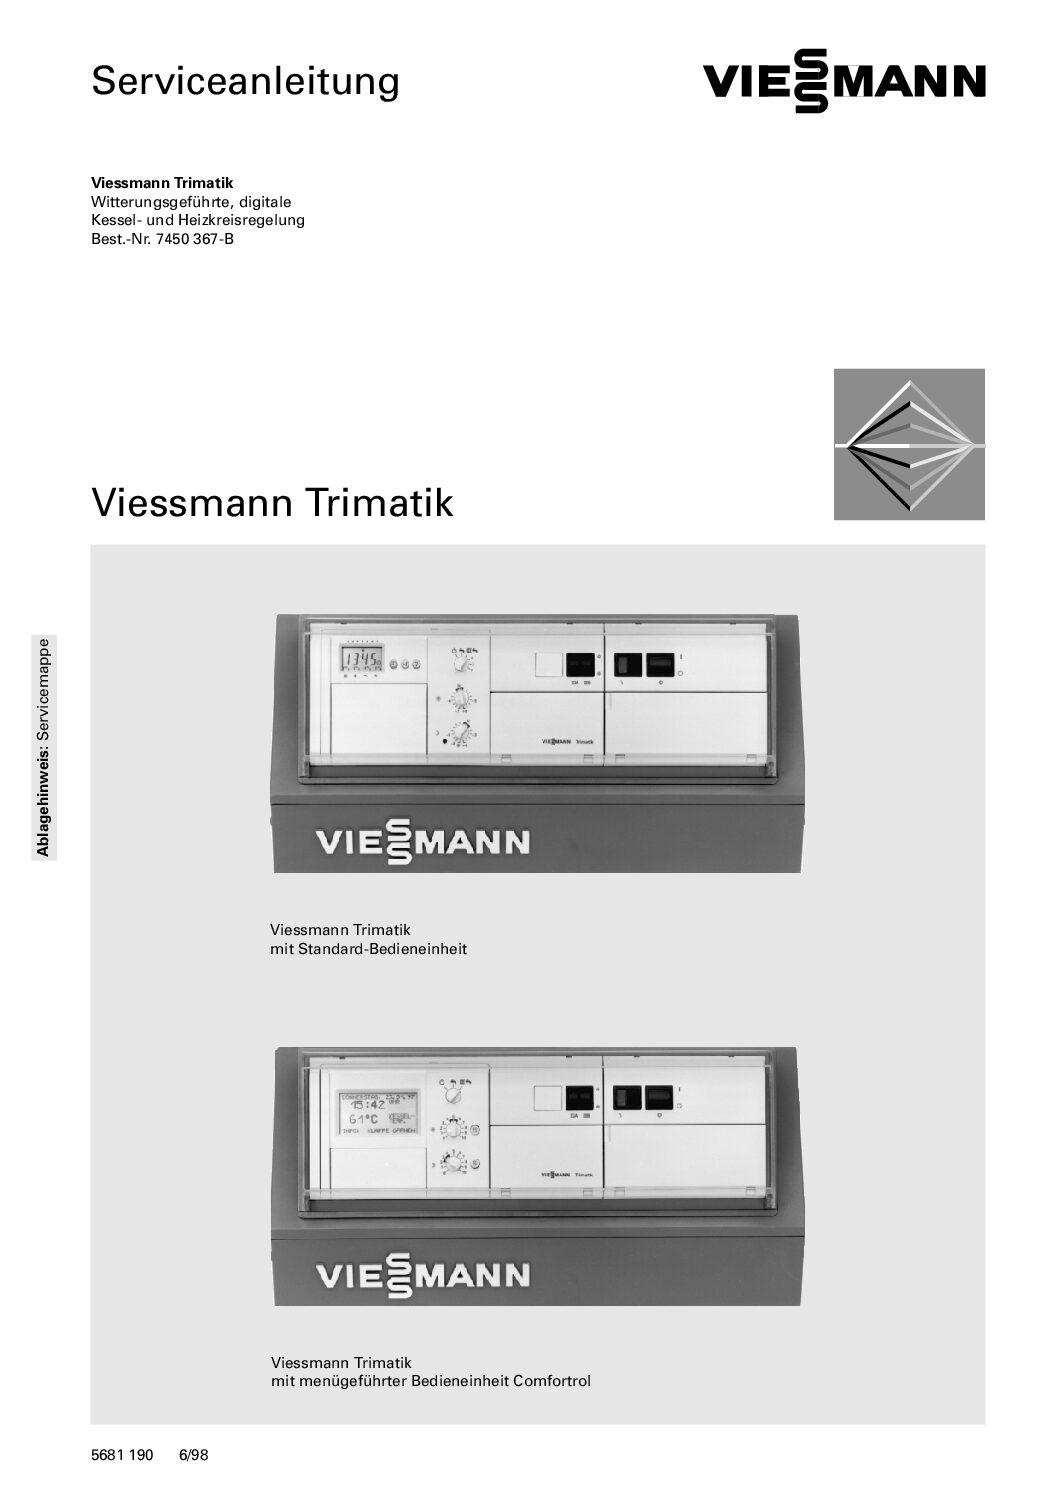 Viessmann Trimatik 7450 367B Bedienungsanleitung